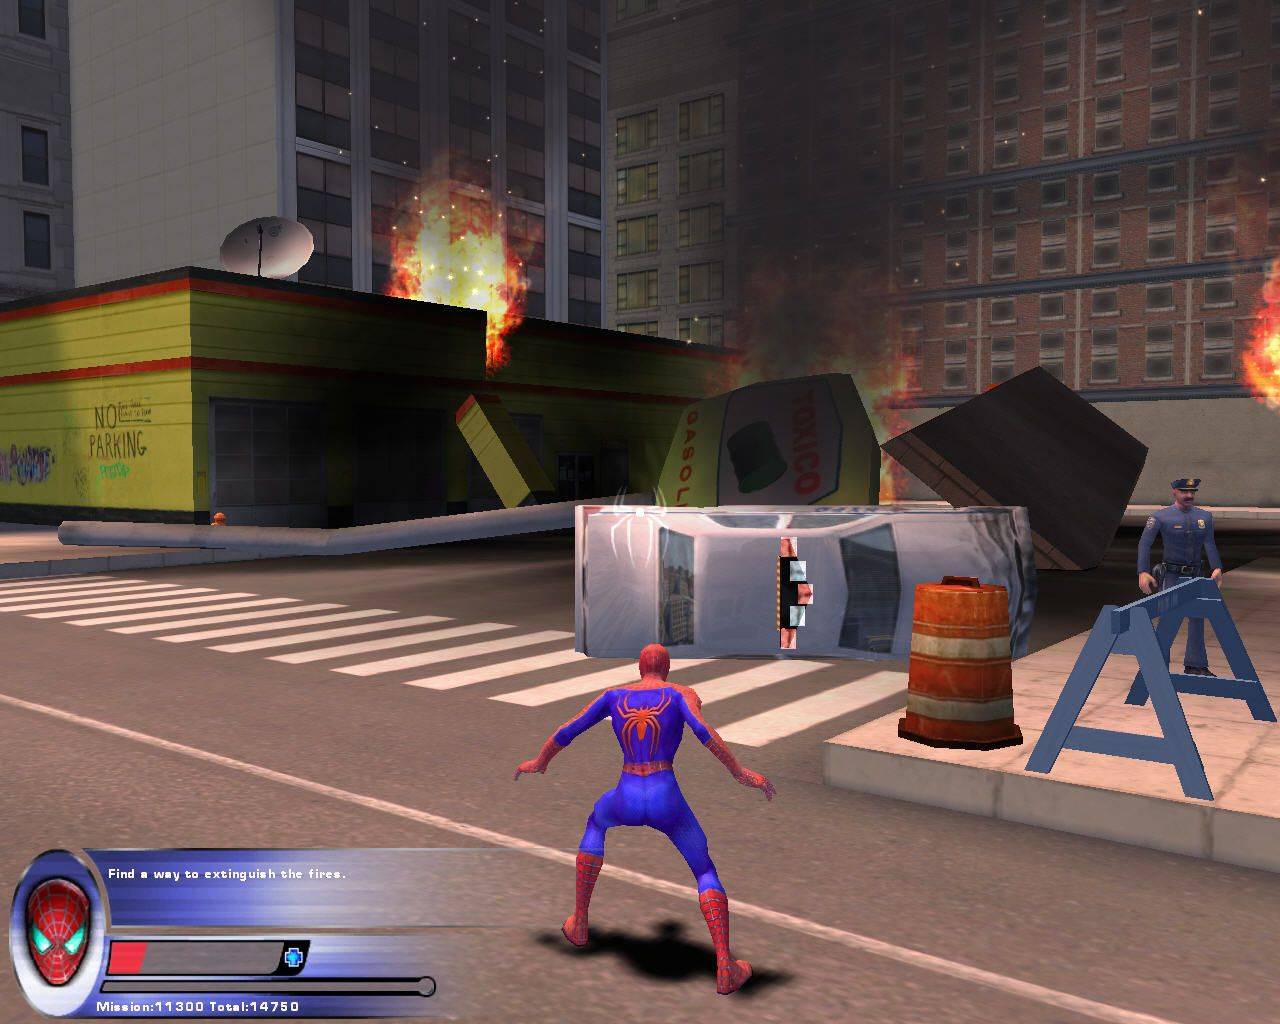 Spider man game pc. Spider-man 2 (игра, 2004). Спайдер Мэн игра. Человек паук игра 2004. Спайдермен 2 игра.